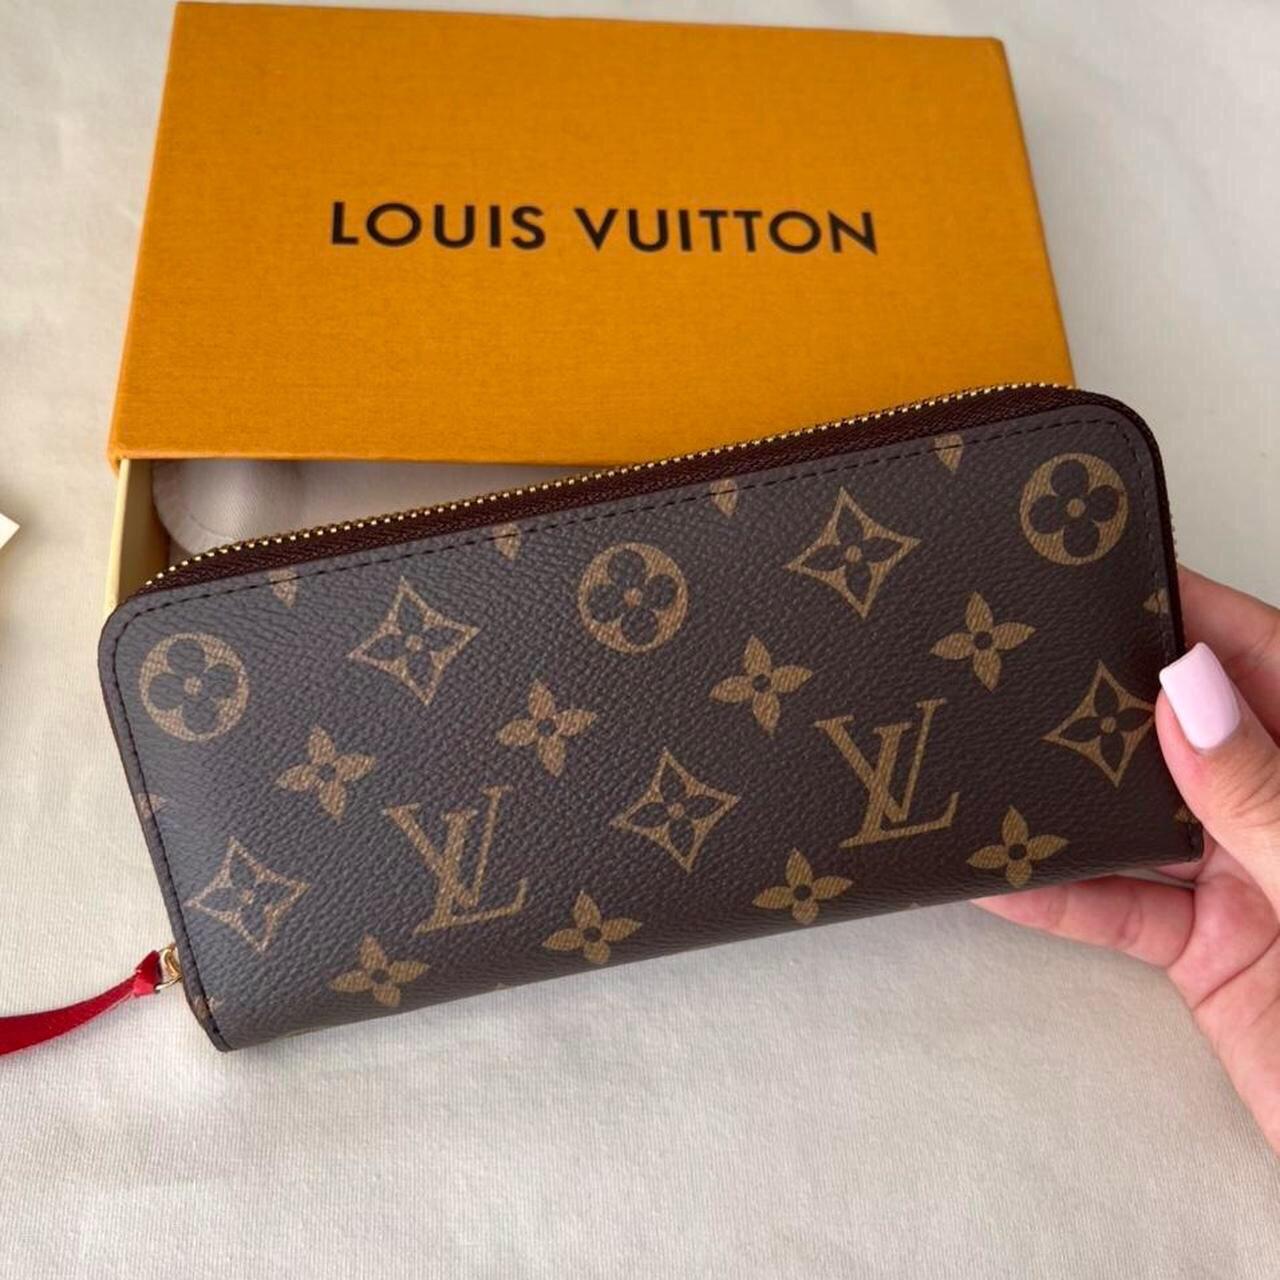 Louis Vuitton Cream Purse 100% authentic items - Depop